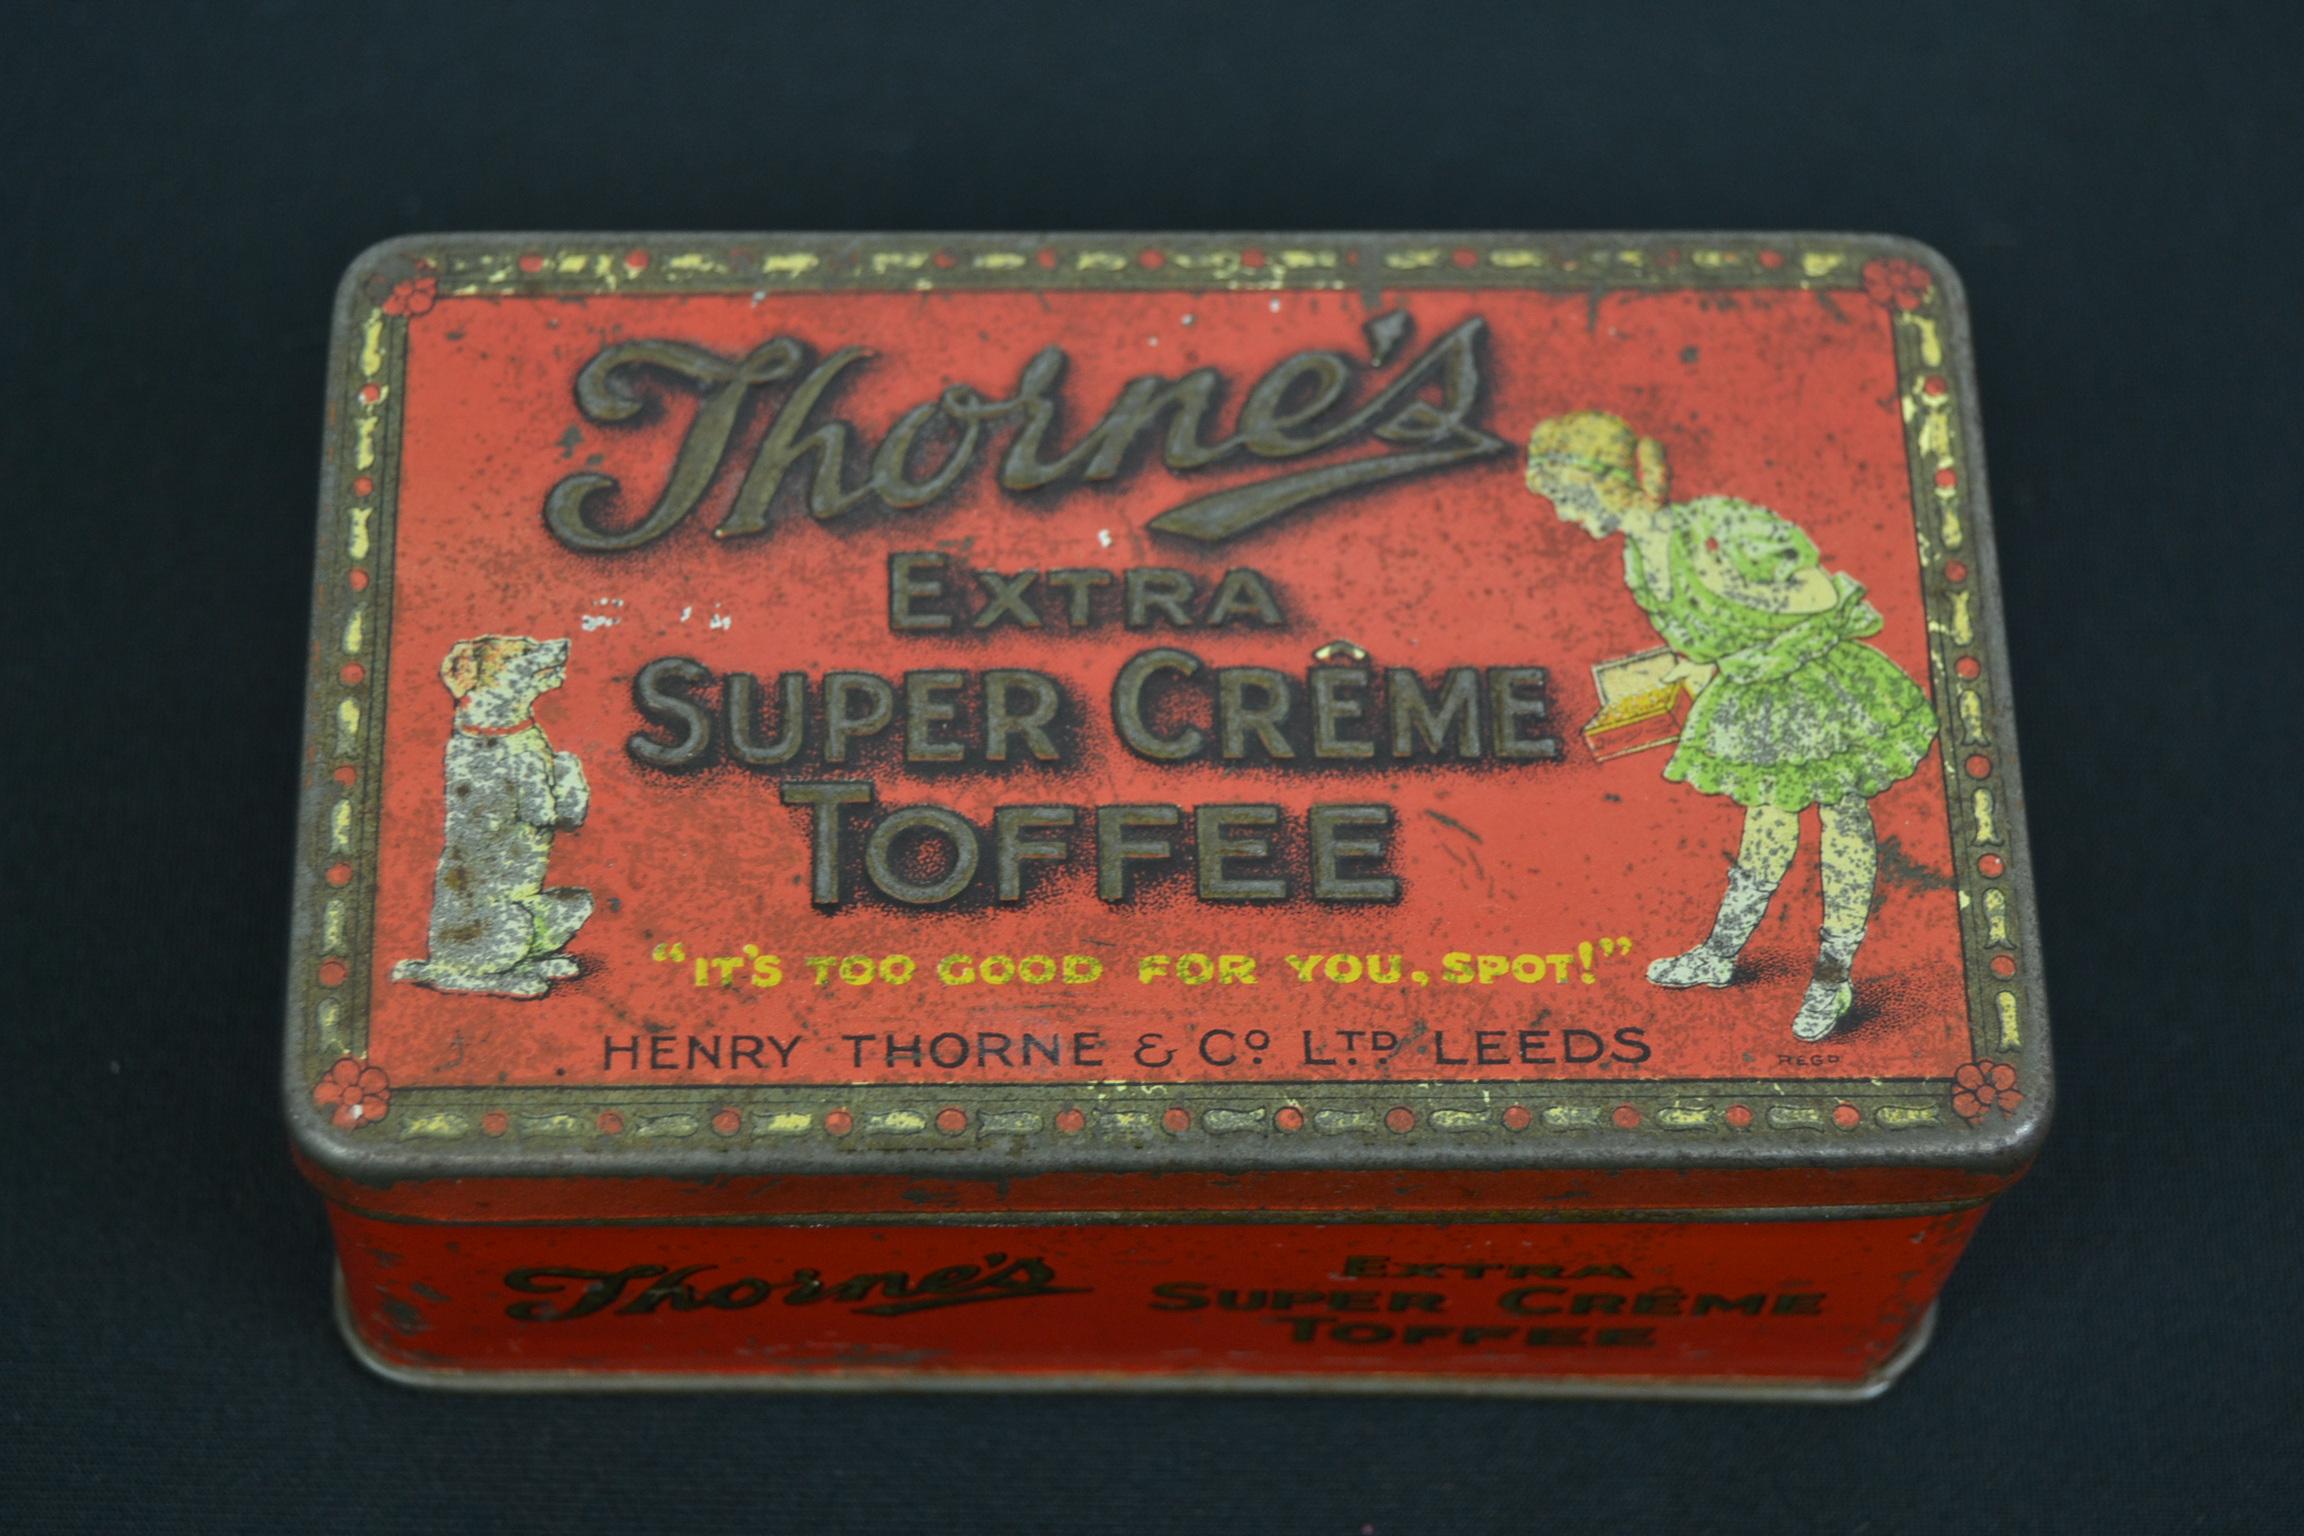 Ancienne boîte de confiserie pour caramels de Henry Thorne and co, Leeds, Angleterre.
Une jolie petite boîte lithographique rouge avec une fille et un chien, ainsi qu'un lettrage en relief sur le couvercle. 
Une boîte de conservation pour les